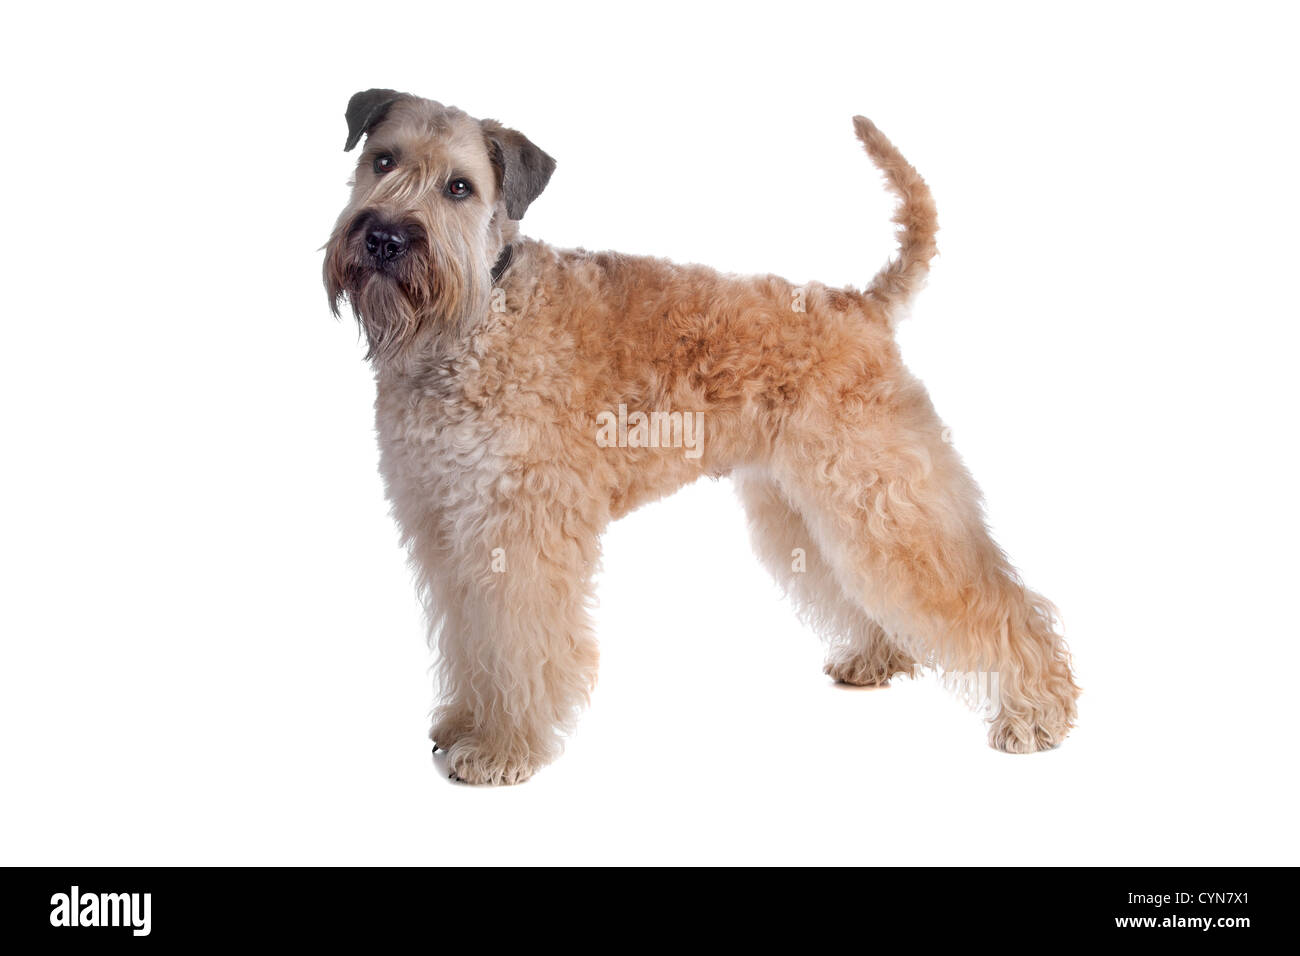 Wheaten Terrier chien, isolé sur fond blanc Banque D'Images